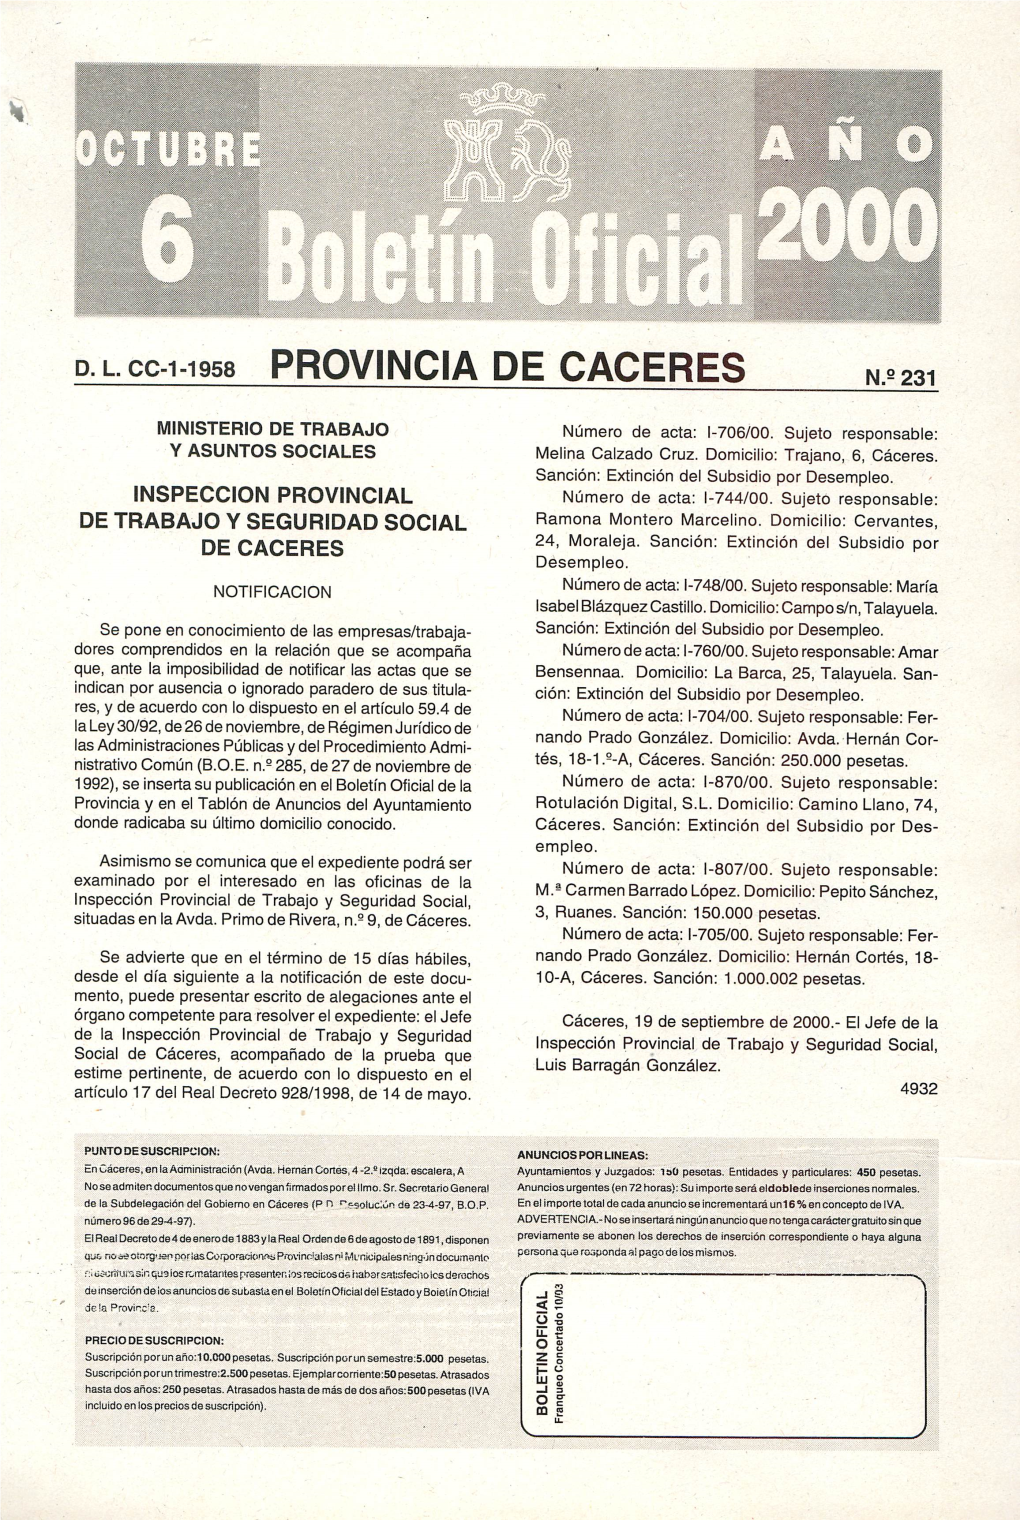 D.L.Cc-1-1958 Provincia De Caceres N.E 231